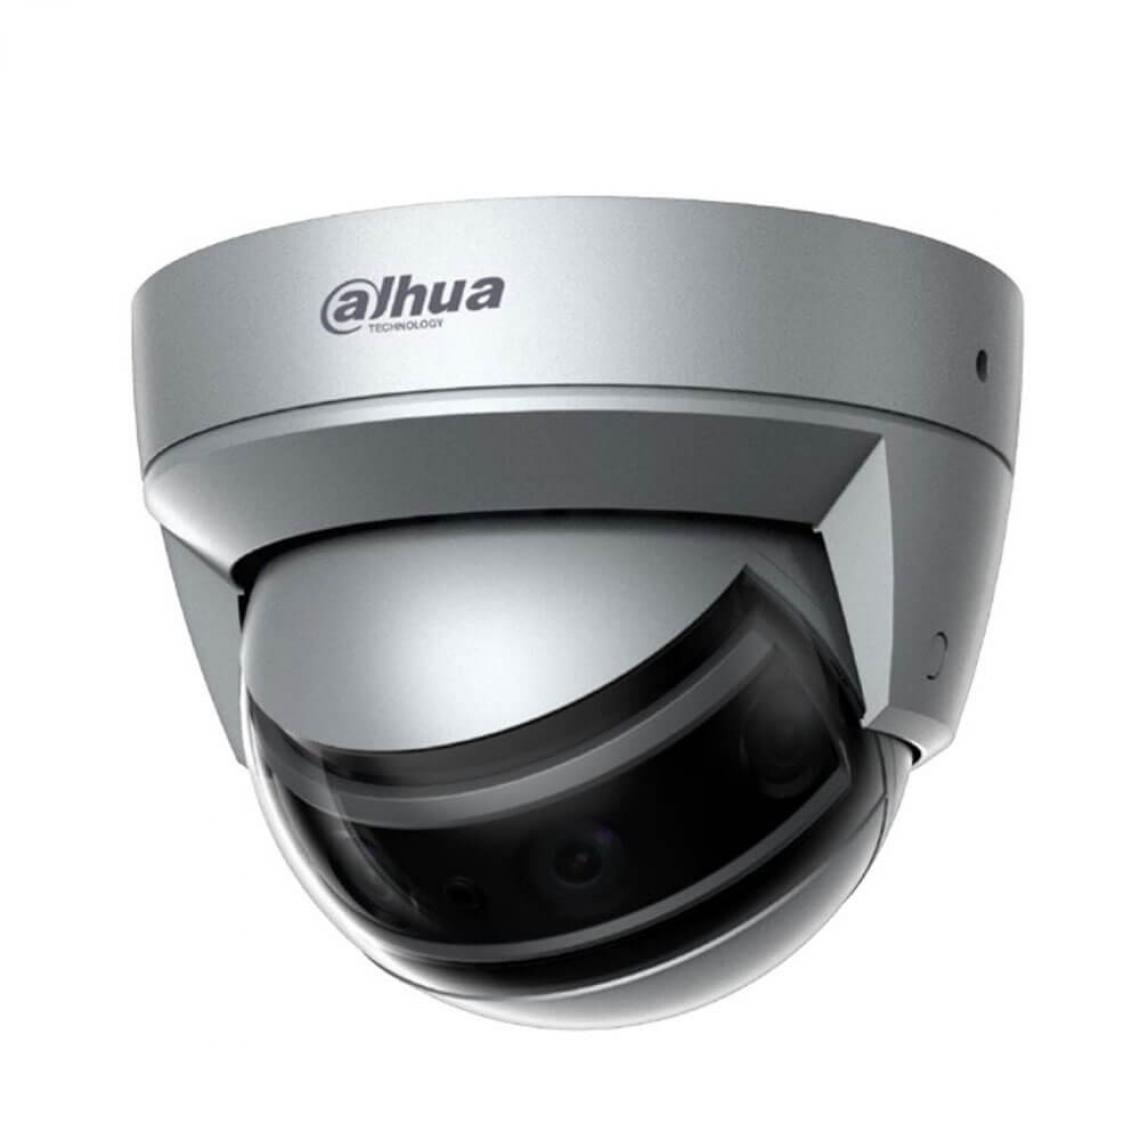 Dahua - Dahua - DH-IPC-PDBW8840P-A180-E4-DC12AC24V - Caméra de surveillance connectée